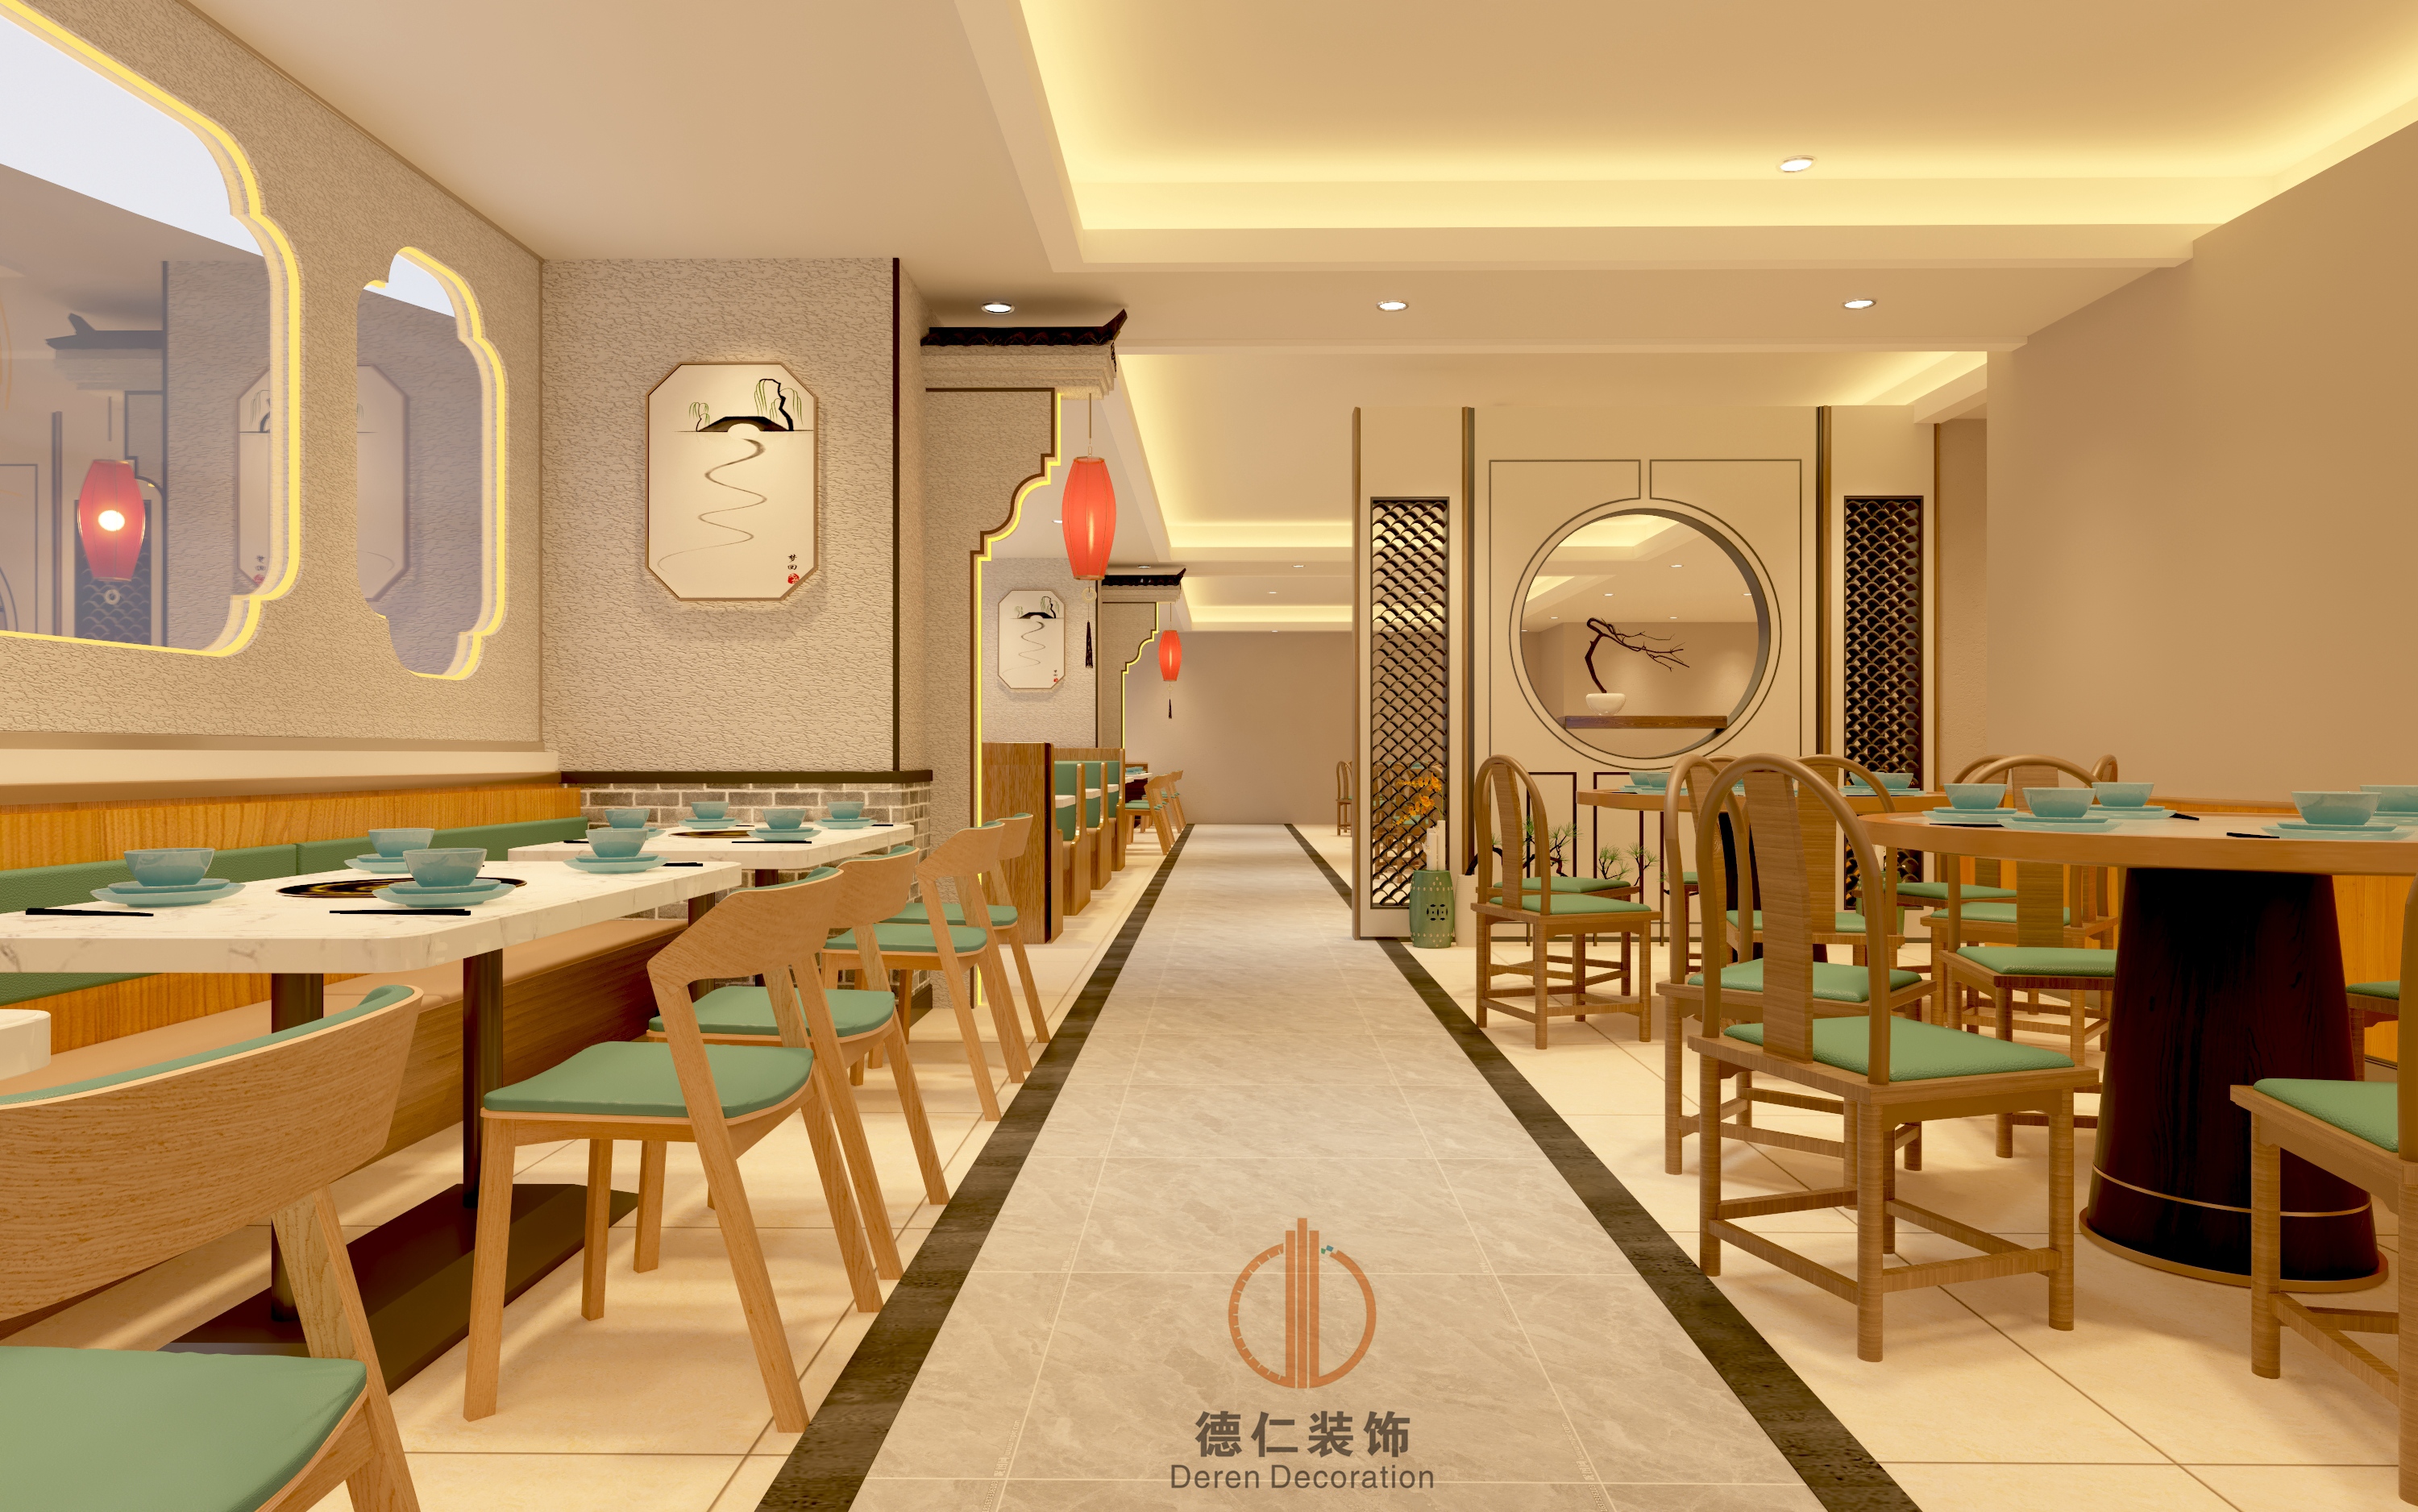 广州餐饮店装修设计,广州中式餐厅装修设计,营造舒适优雅的环境